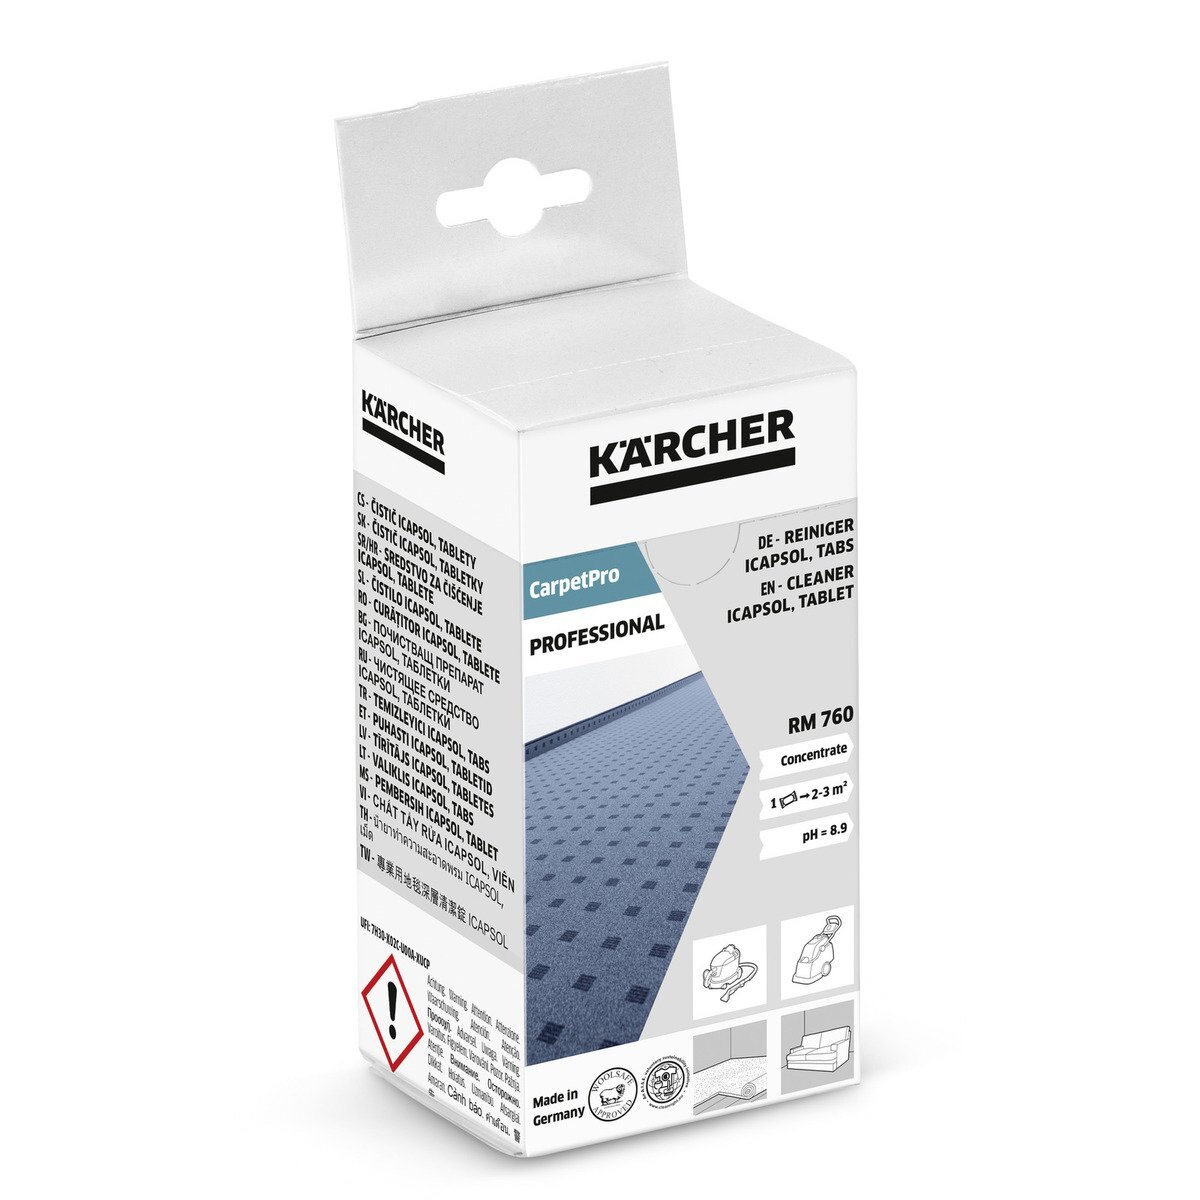 Karcher CarpetPro Cleaner iCapsol RM 760 Tablet, 16Tablets